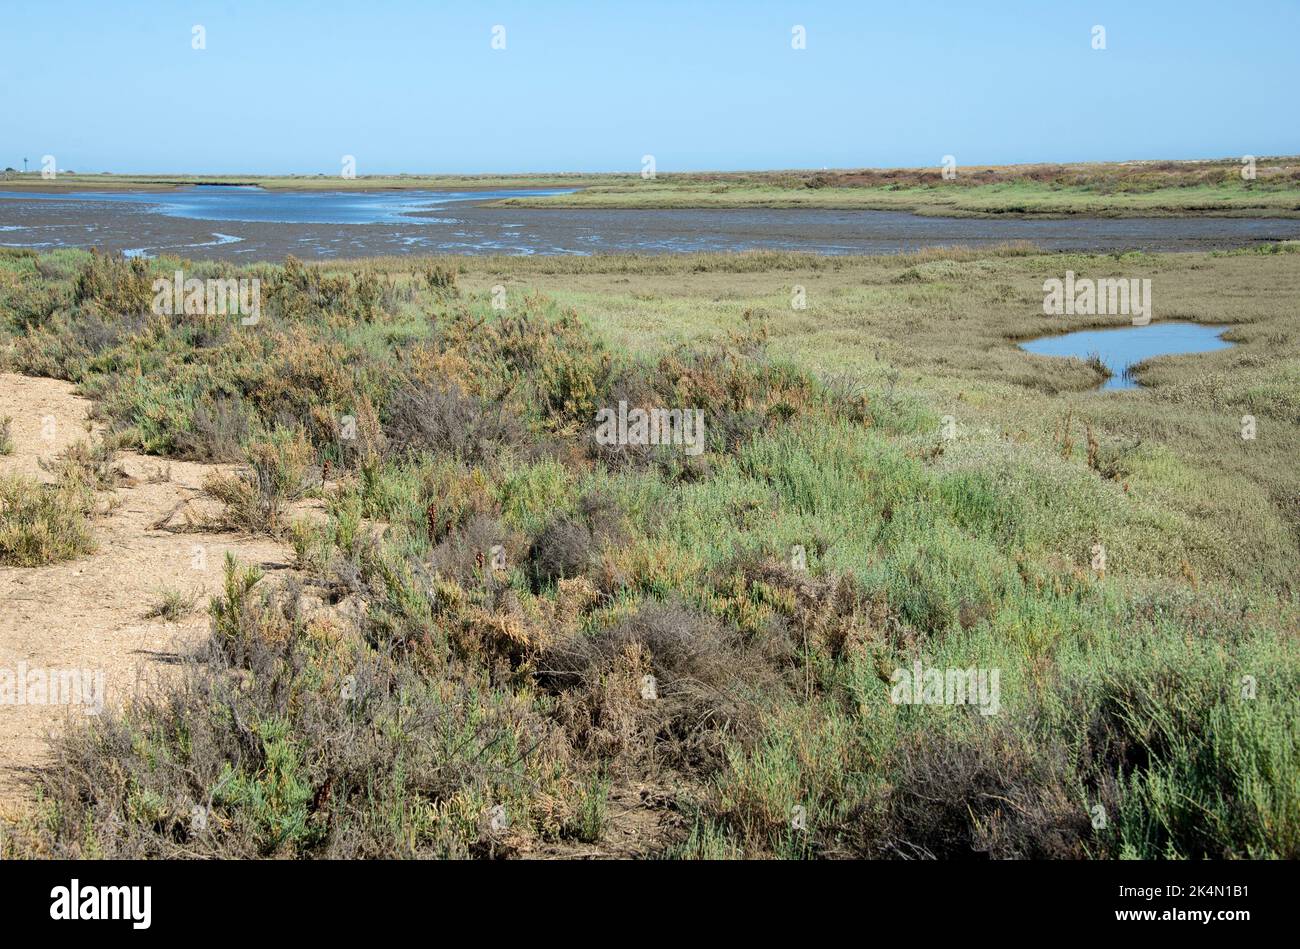 Réserve de biosphère de Marismas del Odiel avec végétation halophytique. Huelva, Andalousie, Espagne. Banque D'Images